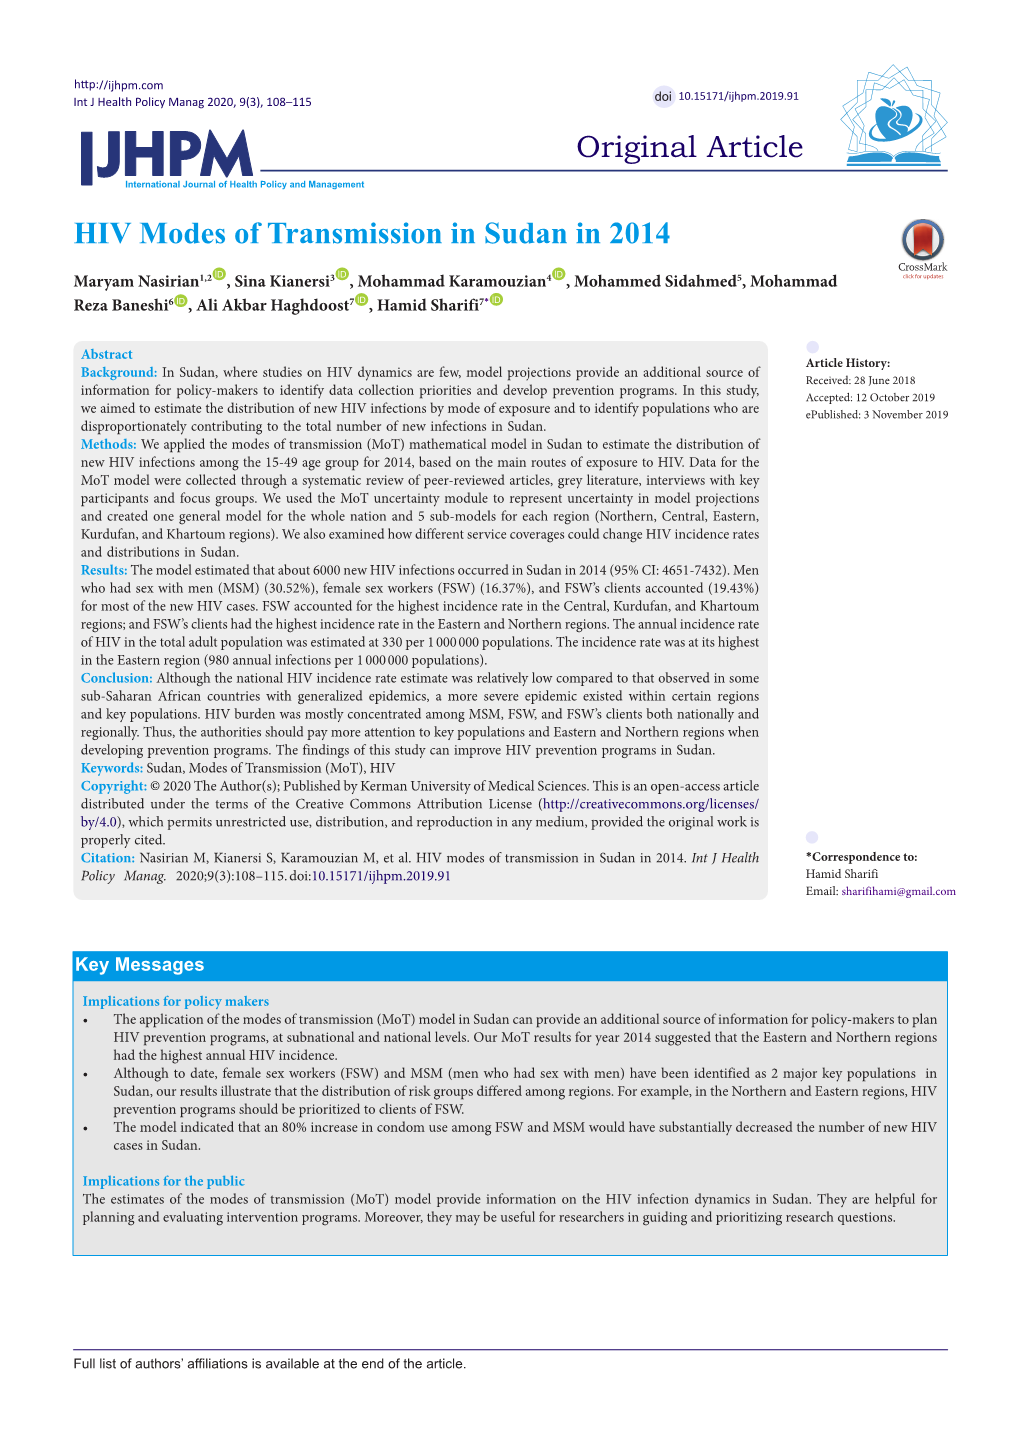 HIV Modes of Transmission in Sudan in 2014